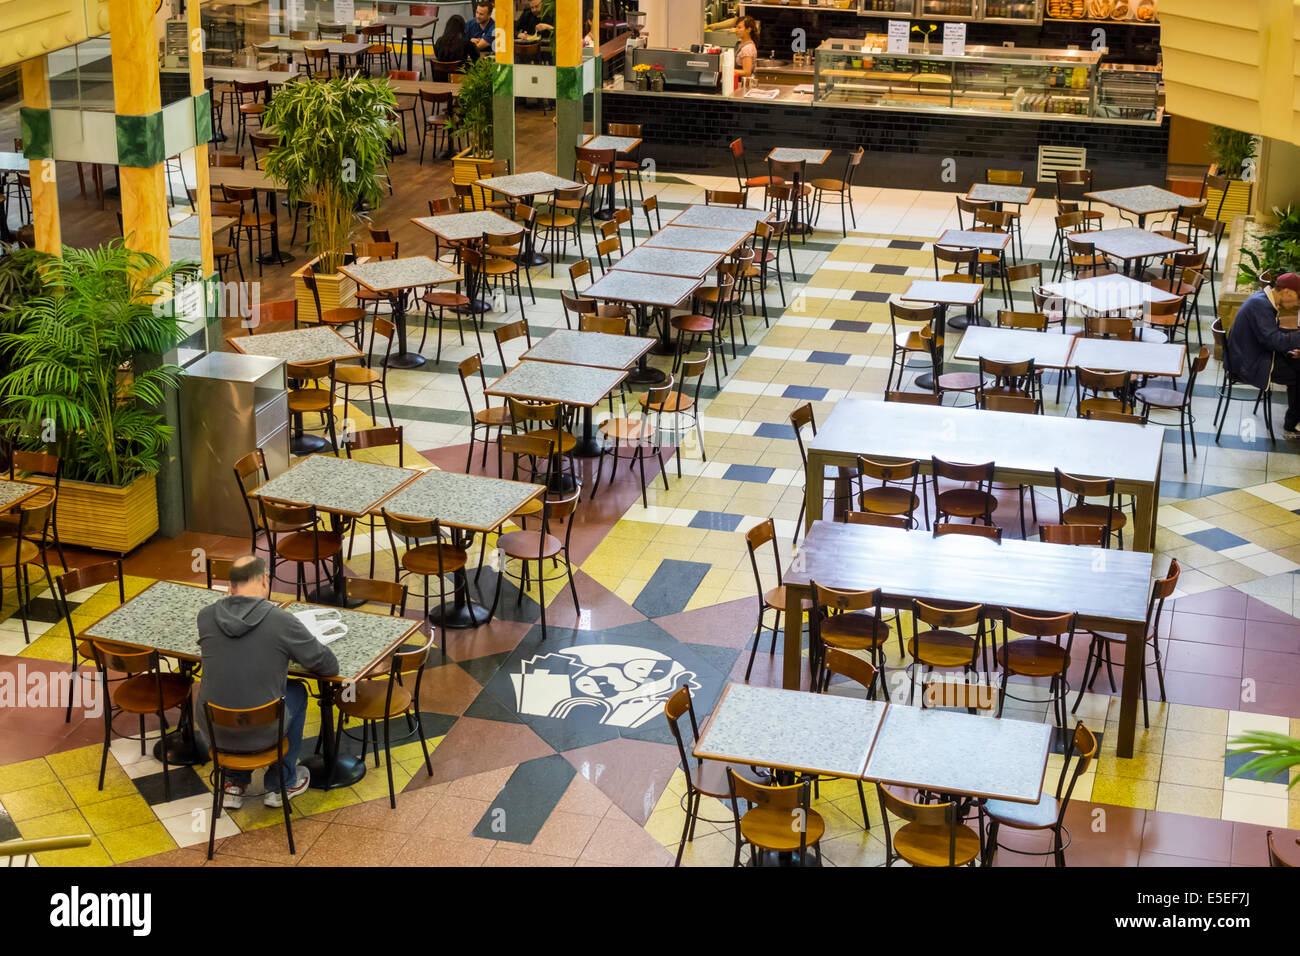 Melbourne Australie, Chinatown, Paramount Center, Food court plaza, presque vide, tables, chaises, un, homme hommes homme, AU140321032 Banque D'Images